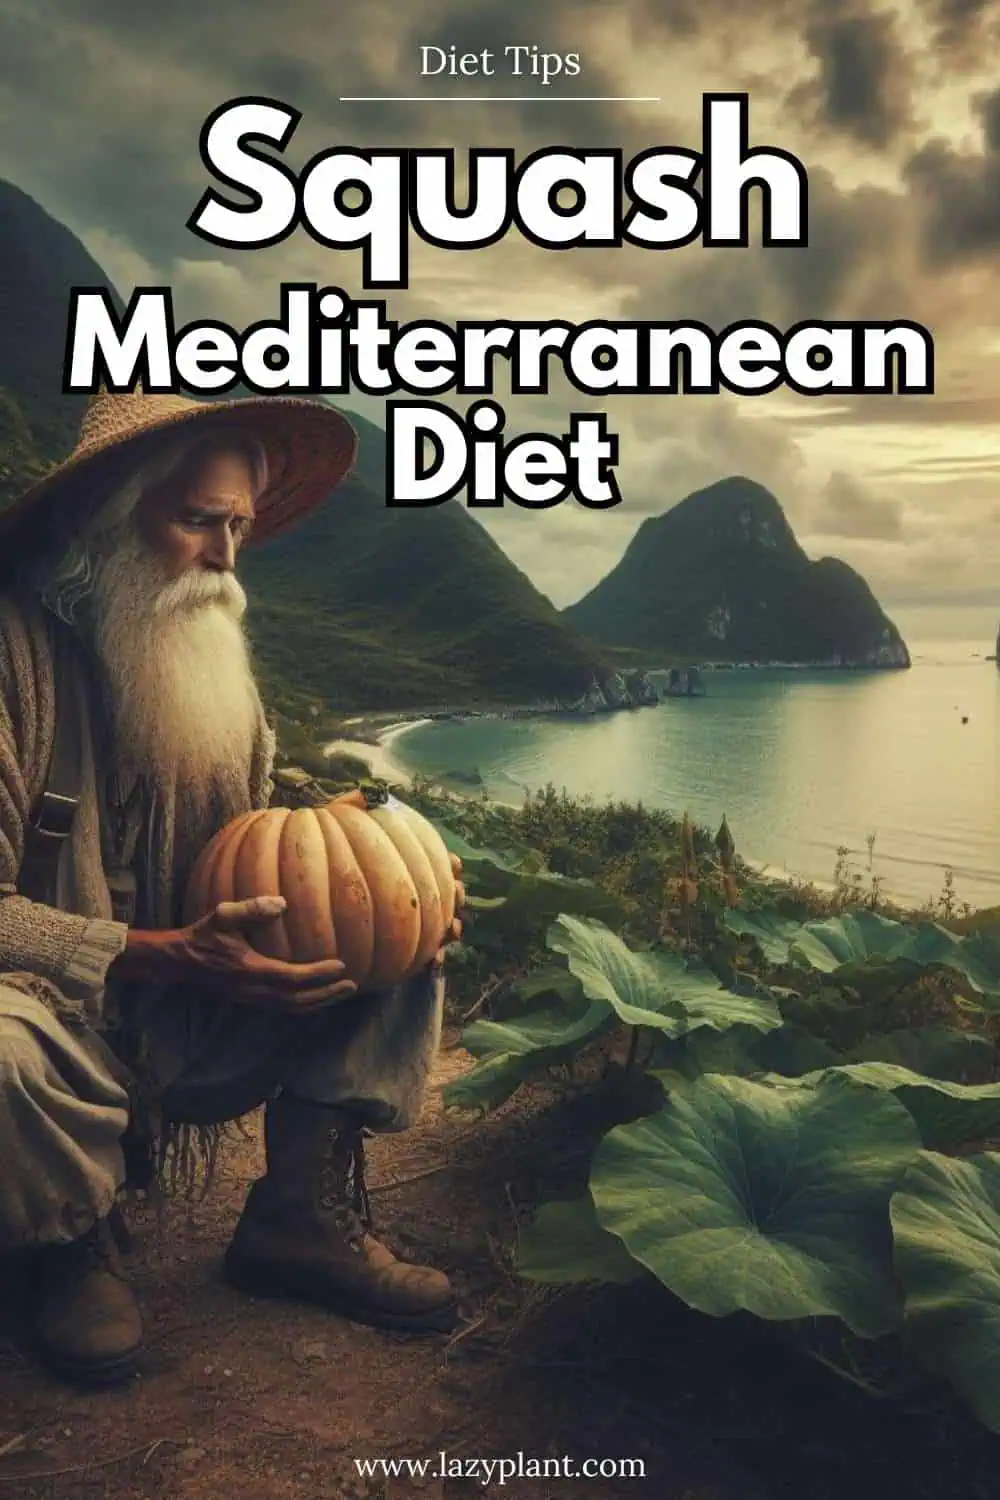 Benefits of Squash in the Mediterranean Diet